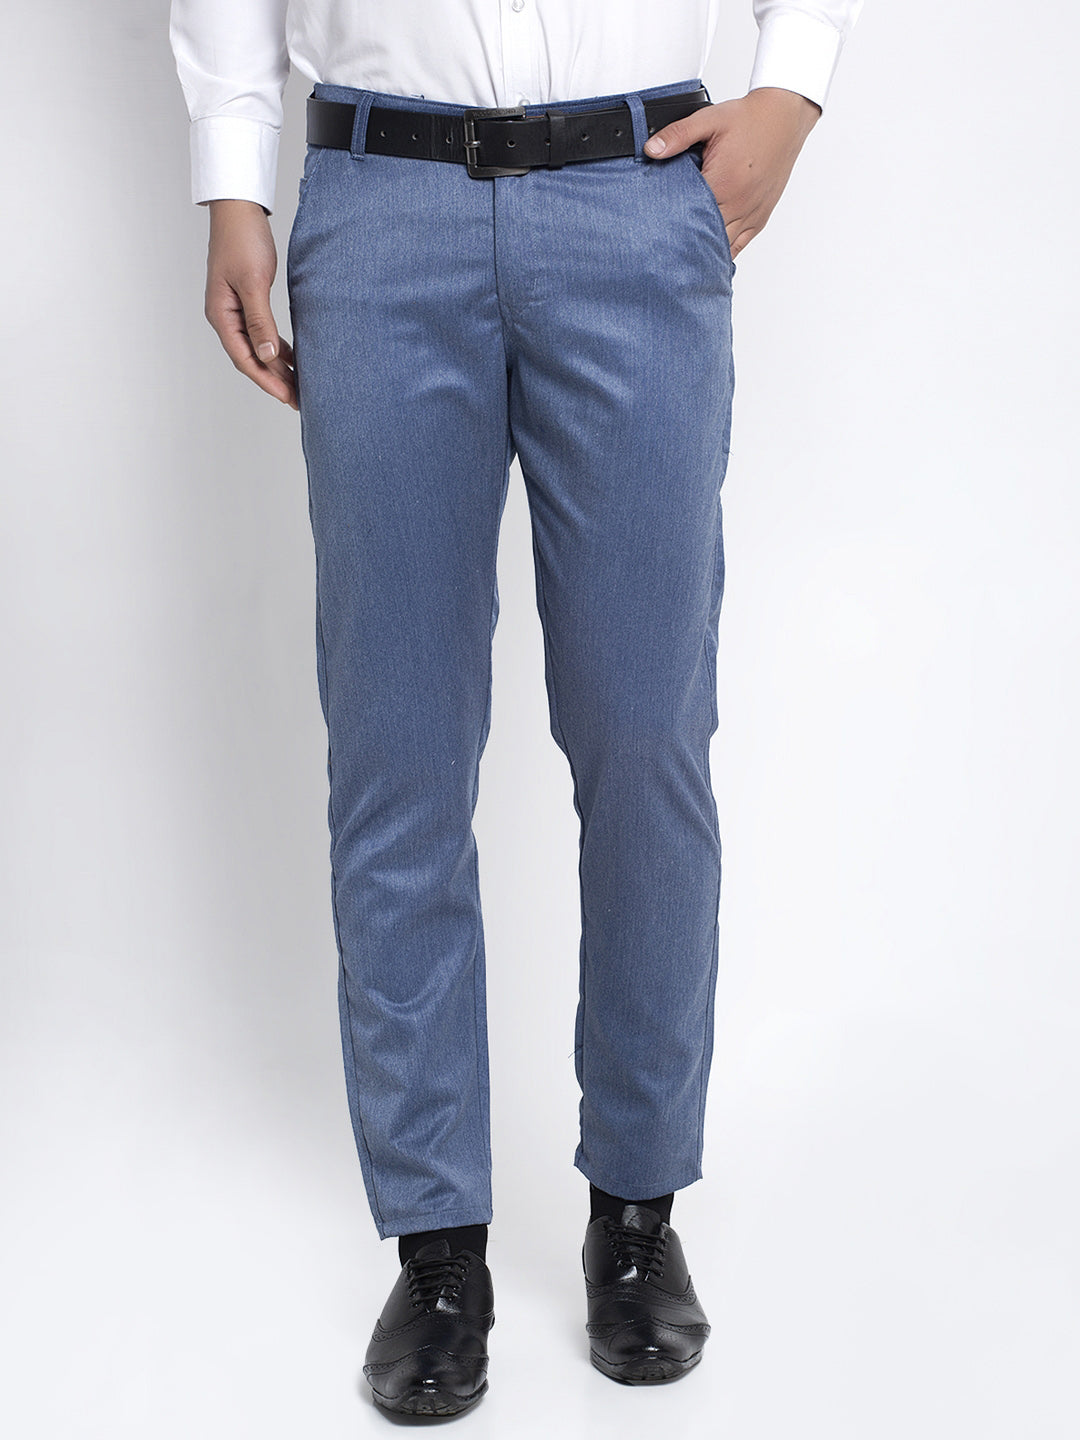 Jainish Men's Blue Cotton Solid Formal Trousers